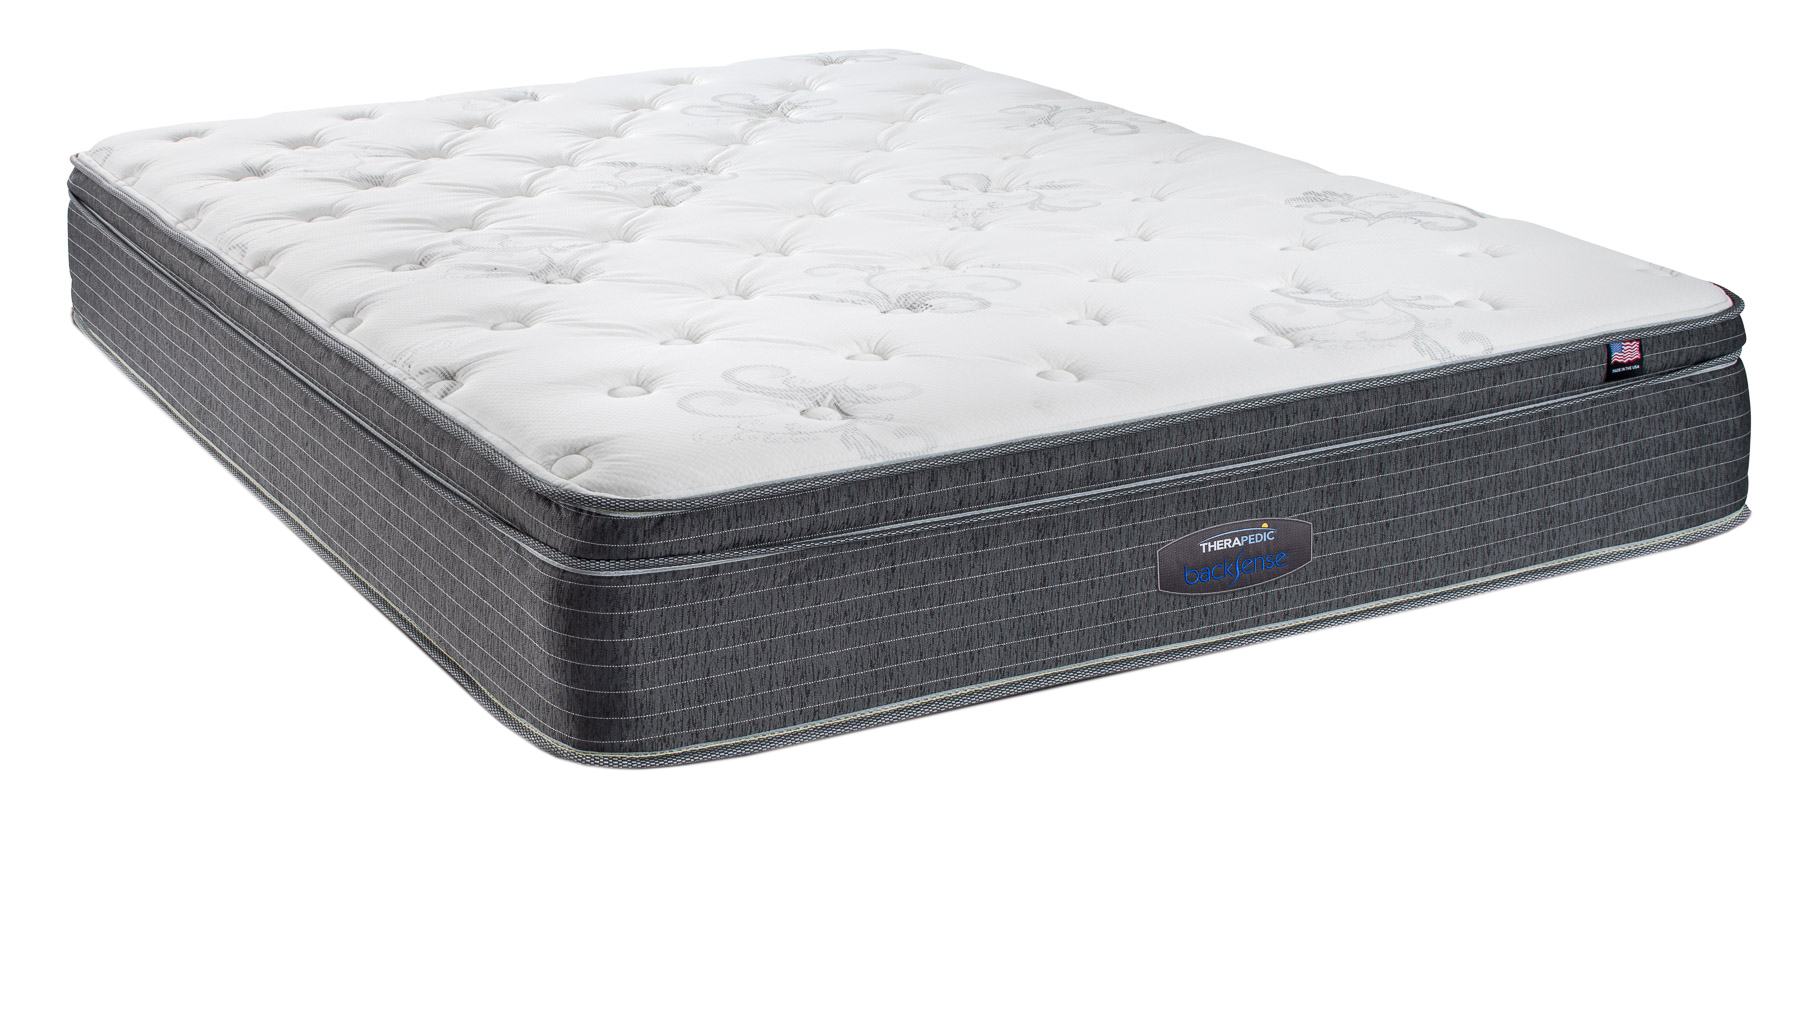 waterbed insert mattress ratings & reviews